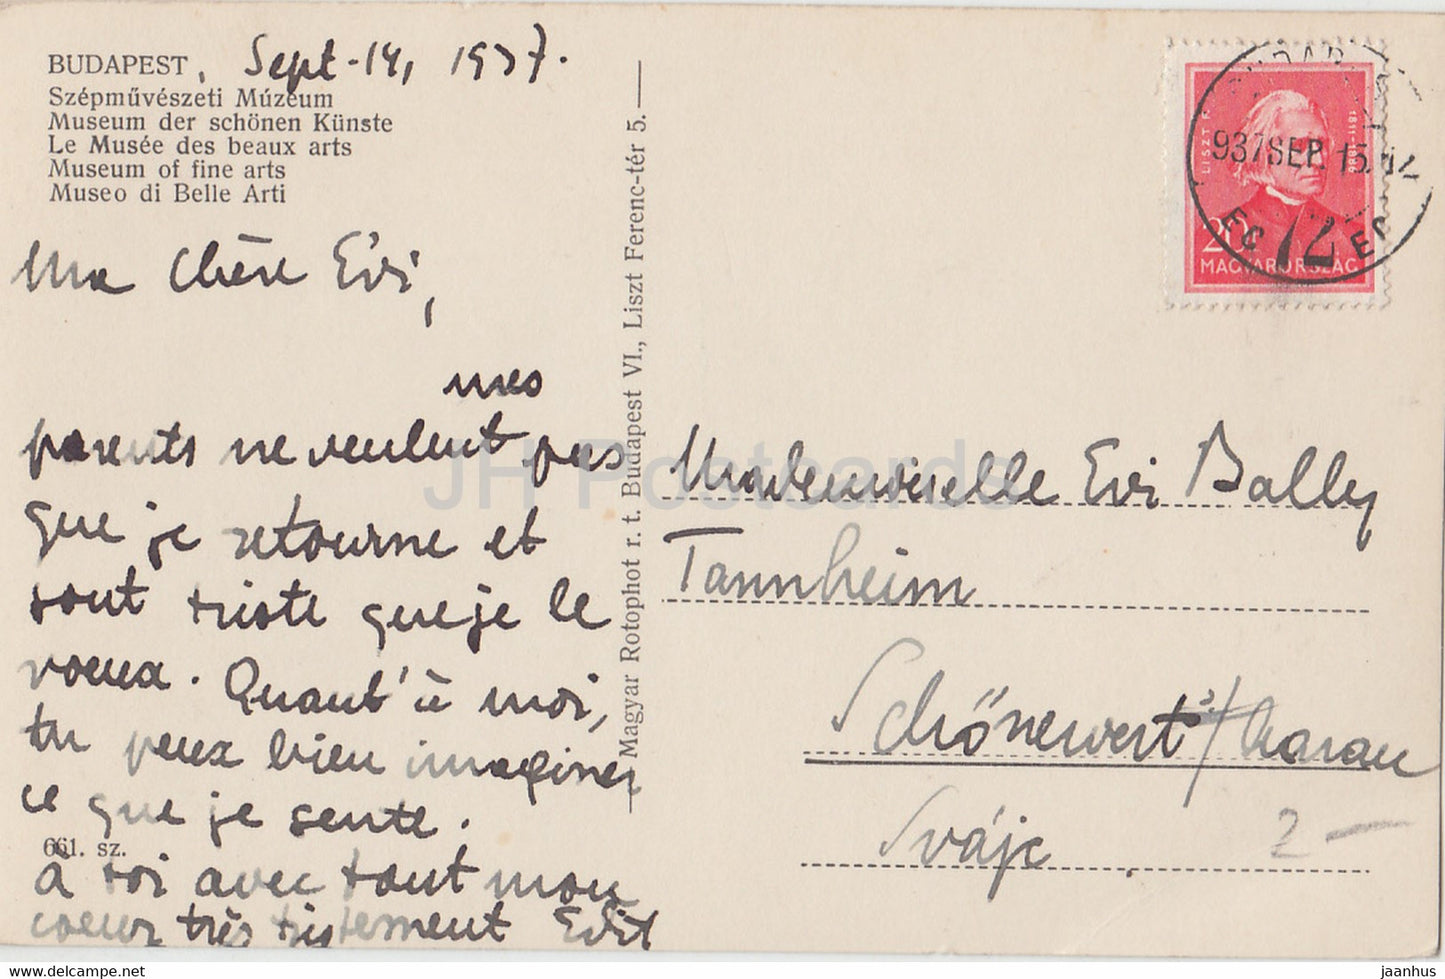 Budapest – Szepmuveszeti Muzeum – Museum der Schönen Künste – alte Postkarte – 1937 – Ungarn – gebraucht